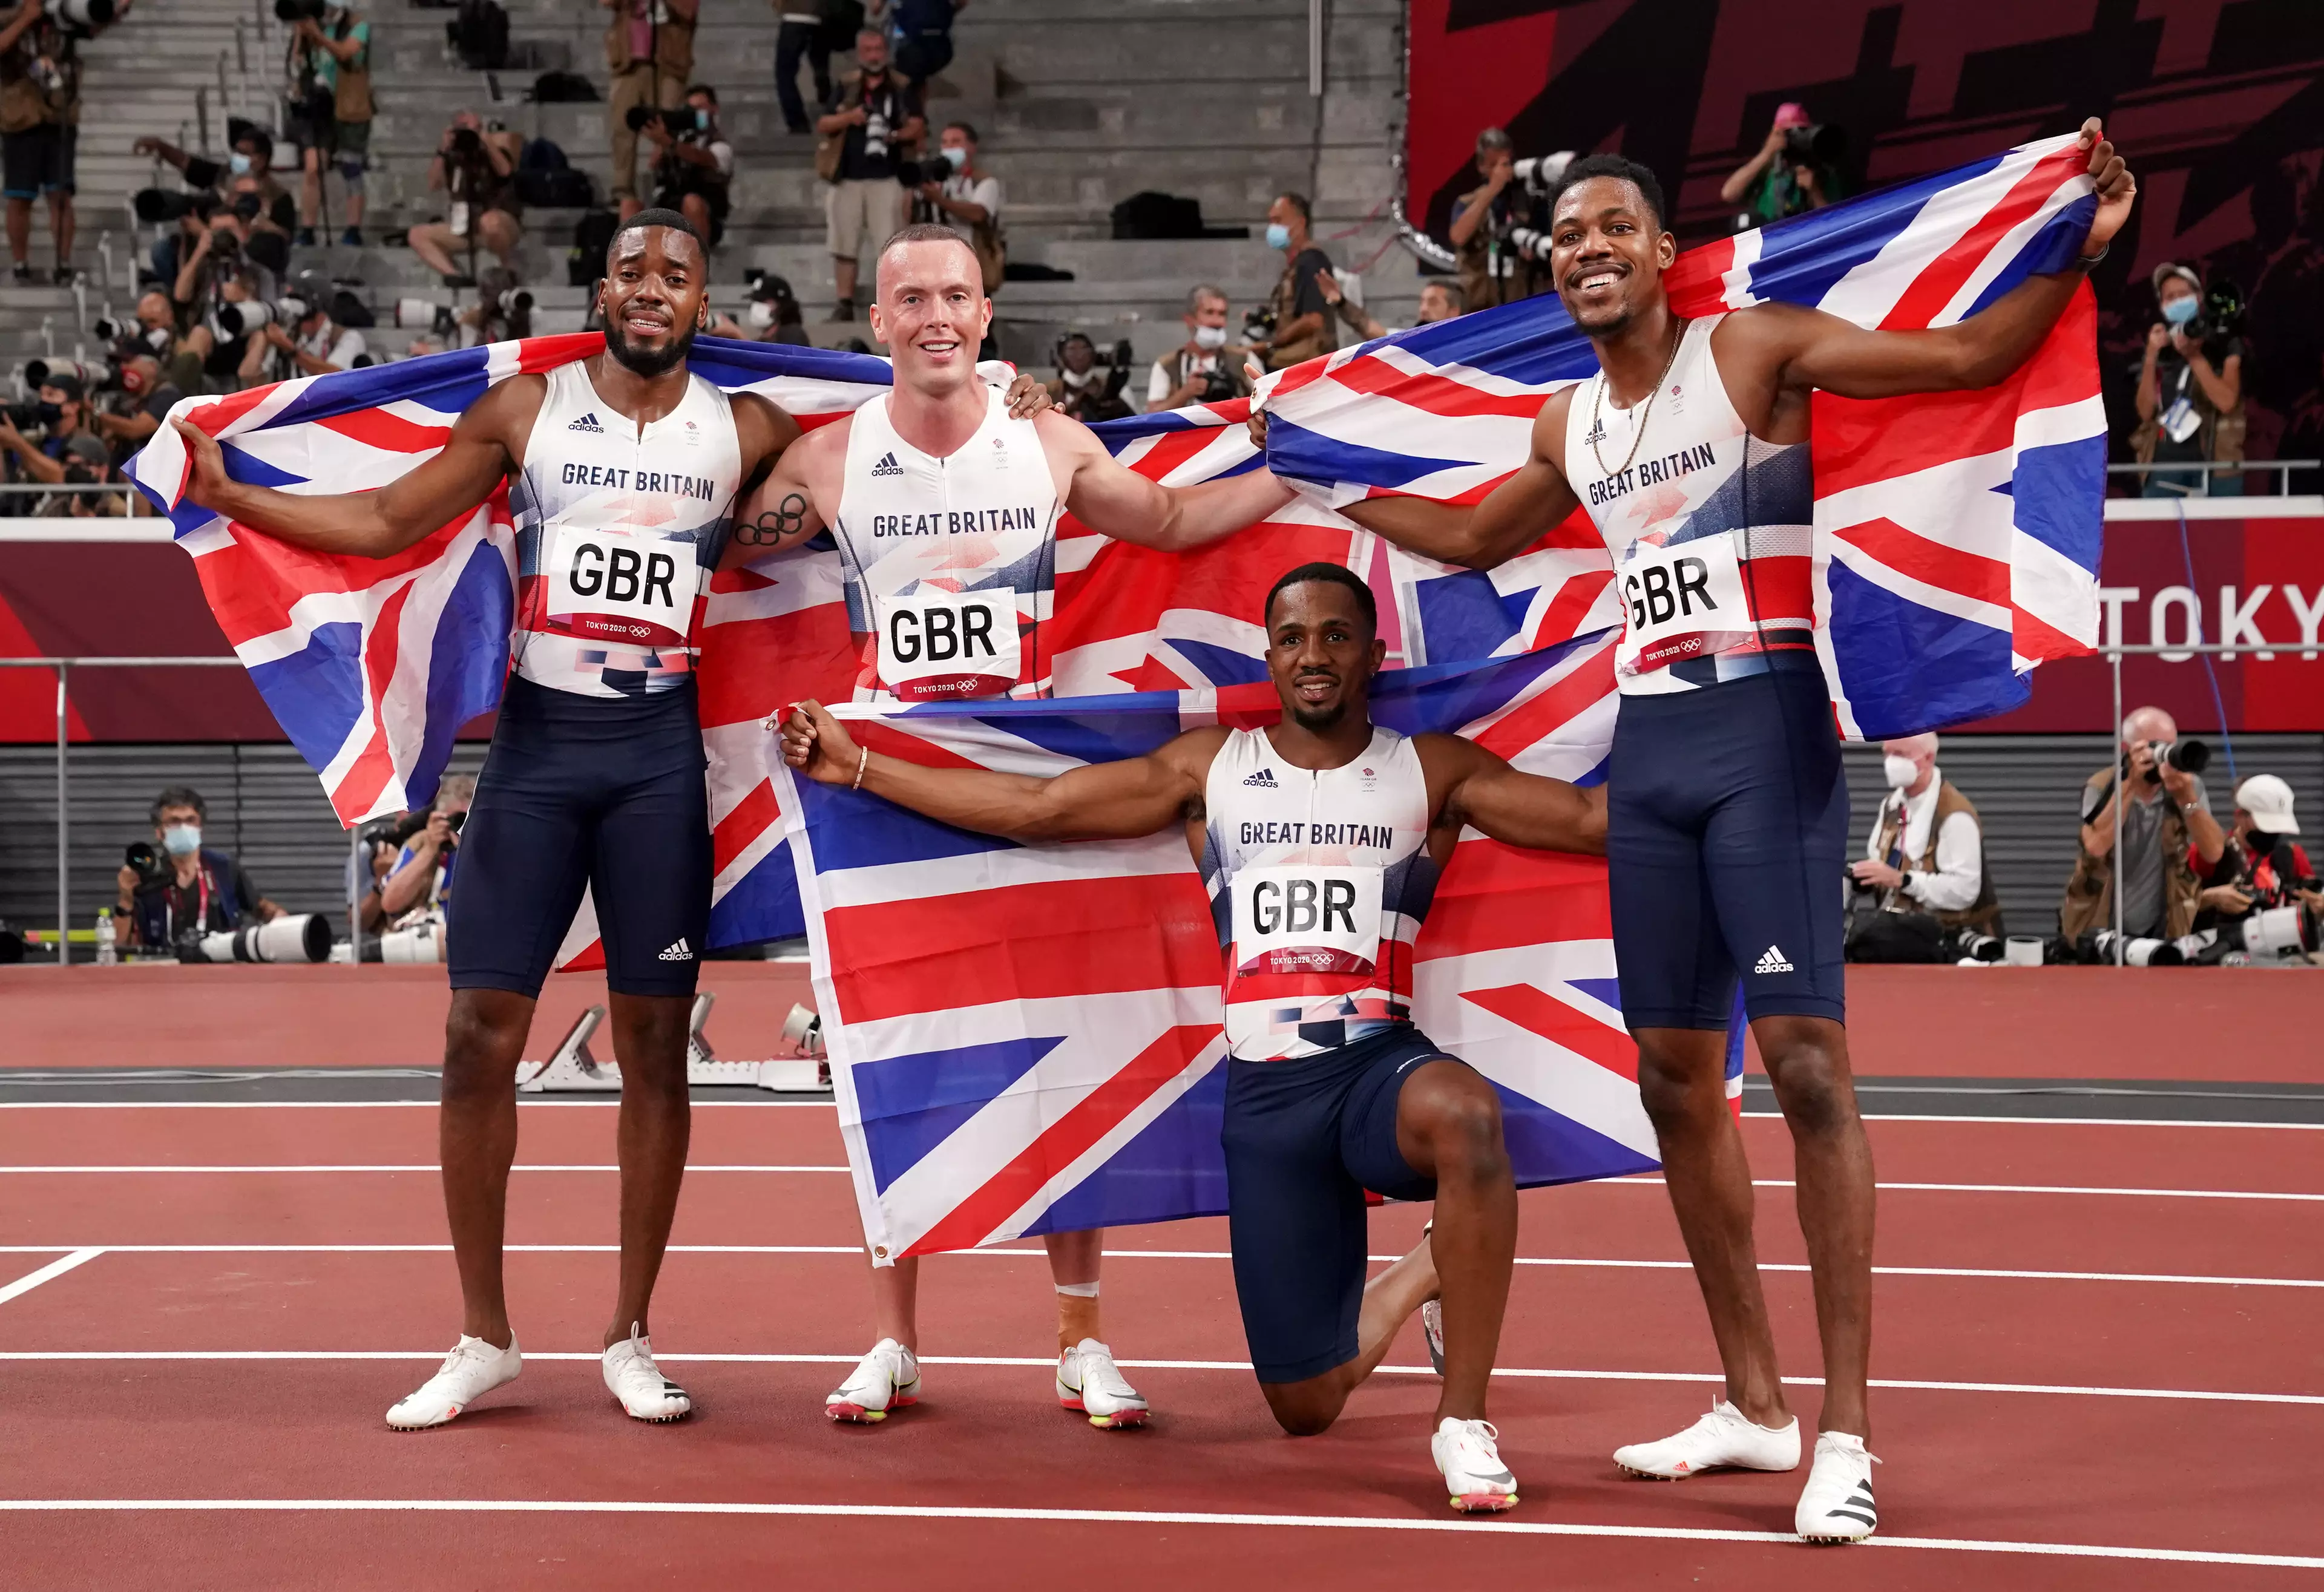 Team GB's men's 4x100m relay squad.